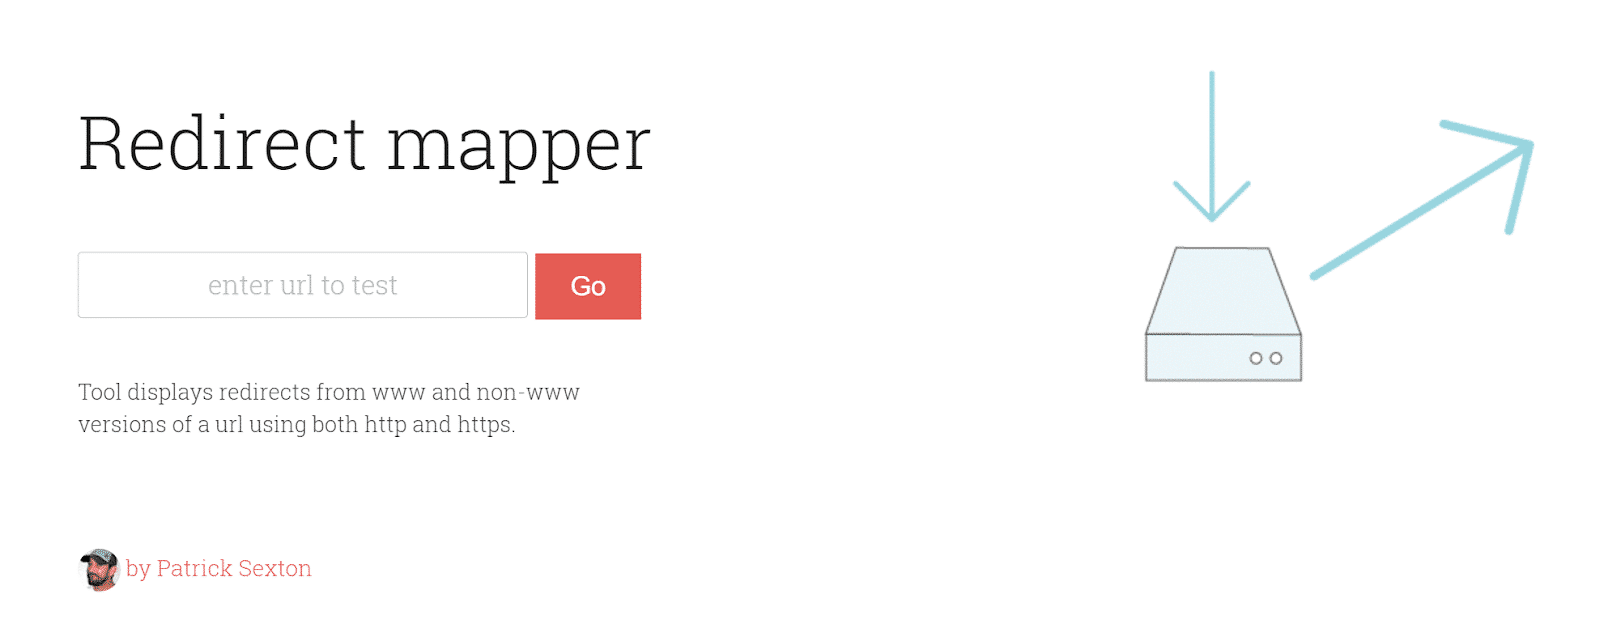 redirect mapper 1